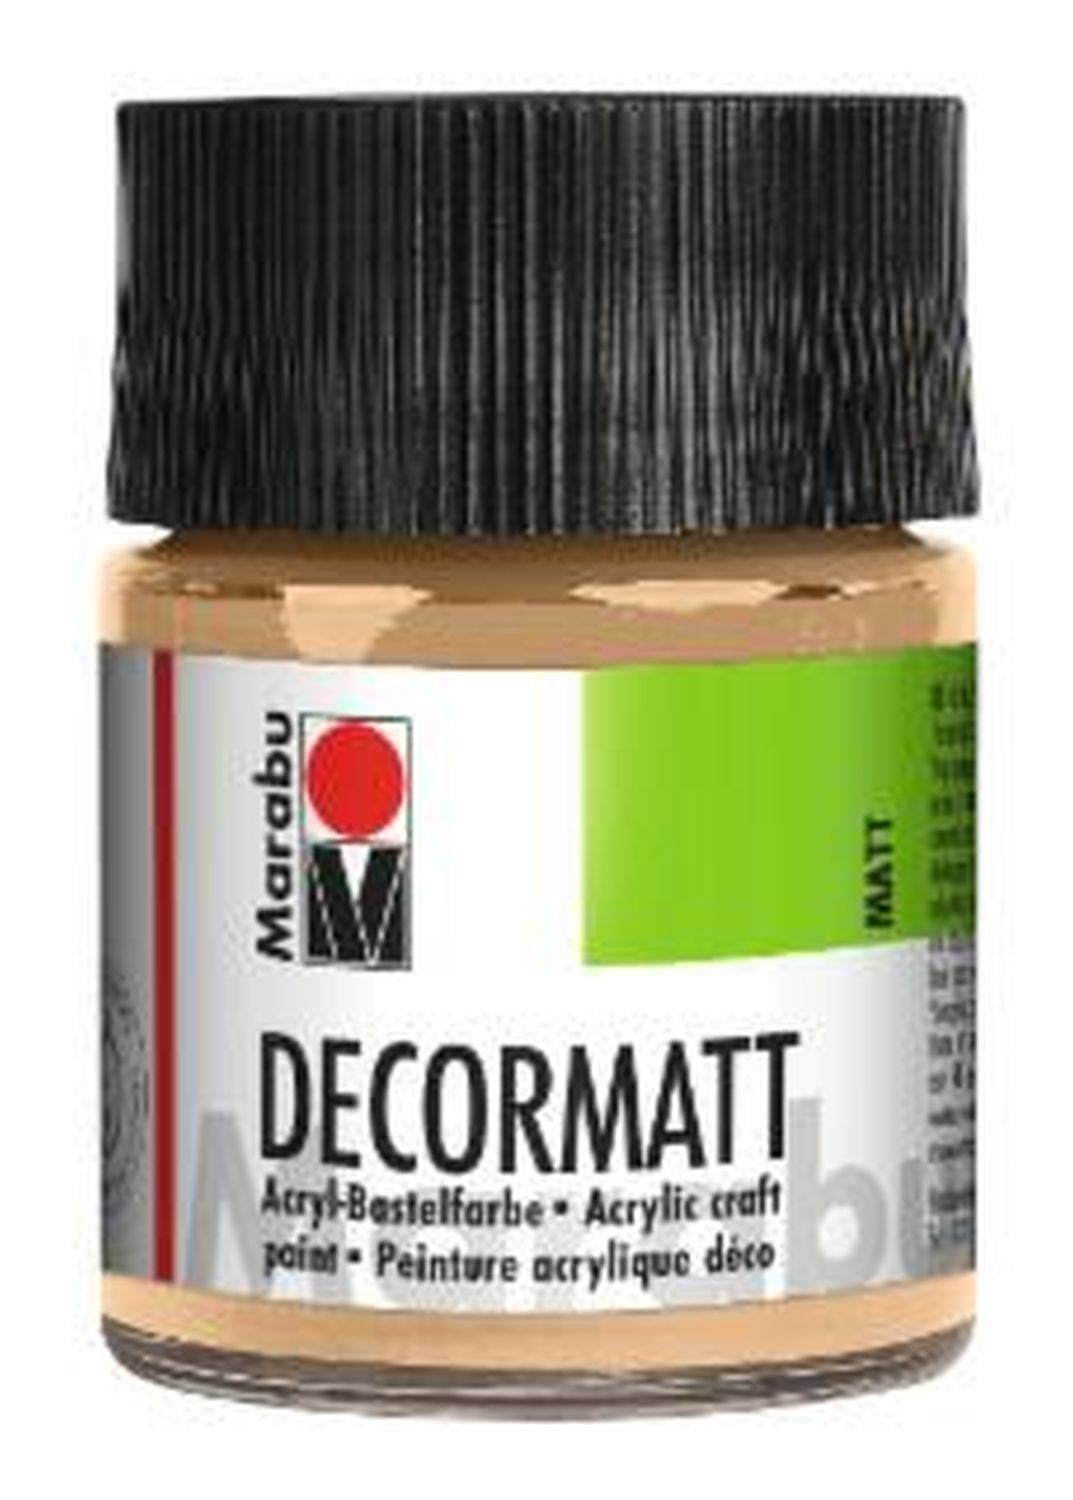 Decormatt Acryl - Hautfarbe 029, 50 ml